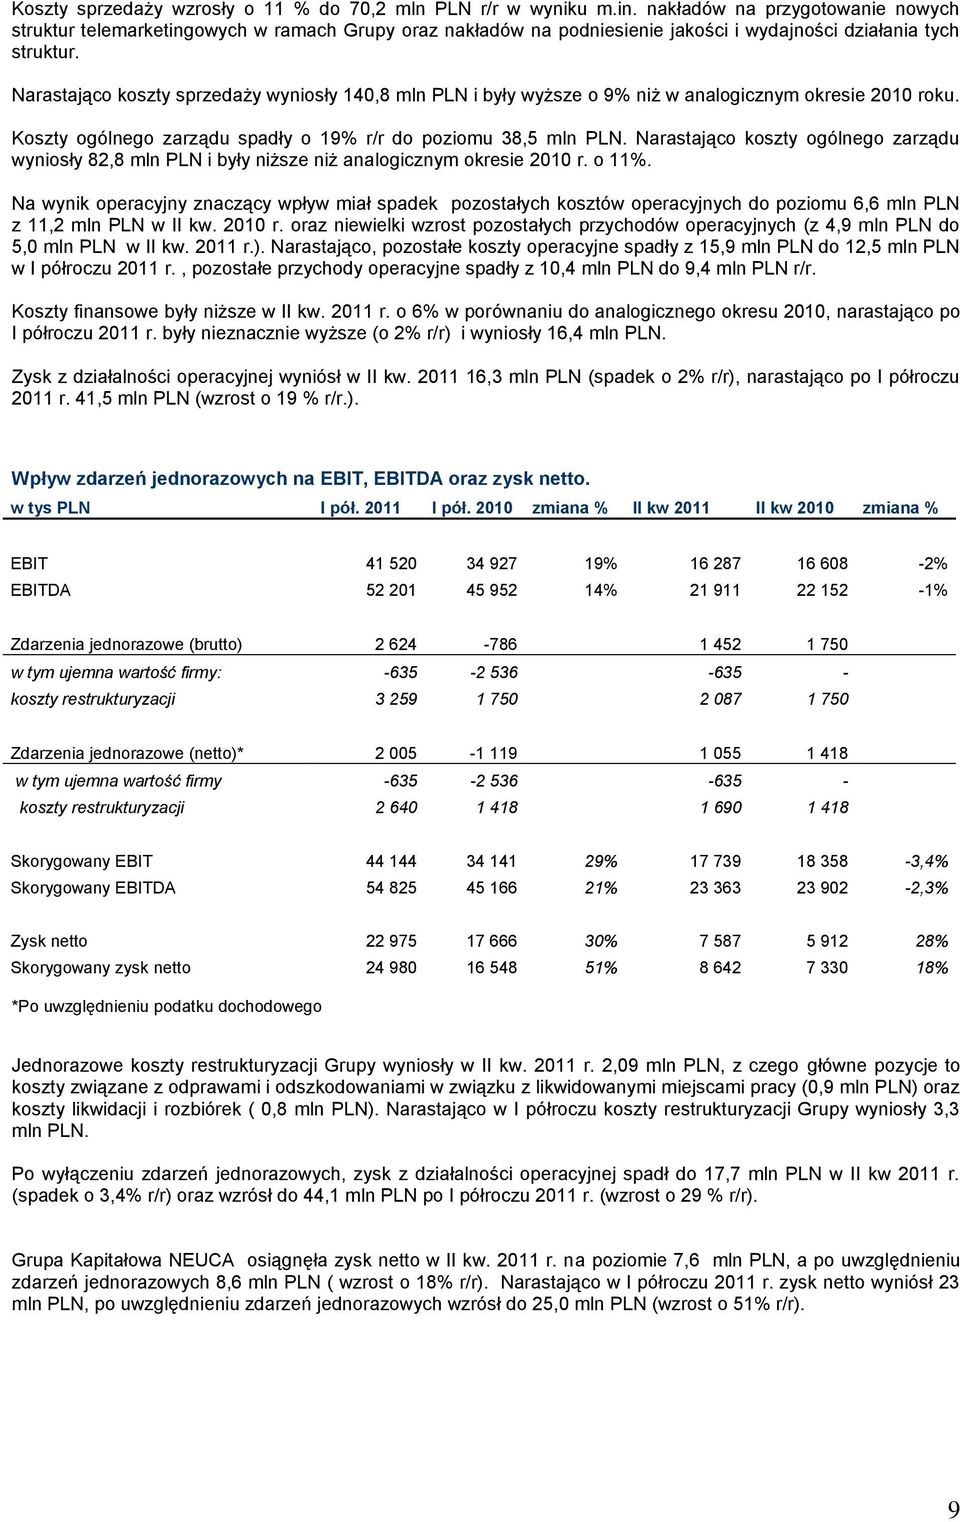 Narastająco koszty sprzedaży wyniosły 140,8 mln PLN i były wyższe o 9% niż w analogicznym okresie 2010 roku. Koszty ogólnego zarządu spadły o 19% r/r do poziomu 38,5 mln PLN.